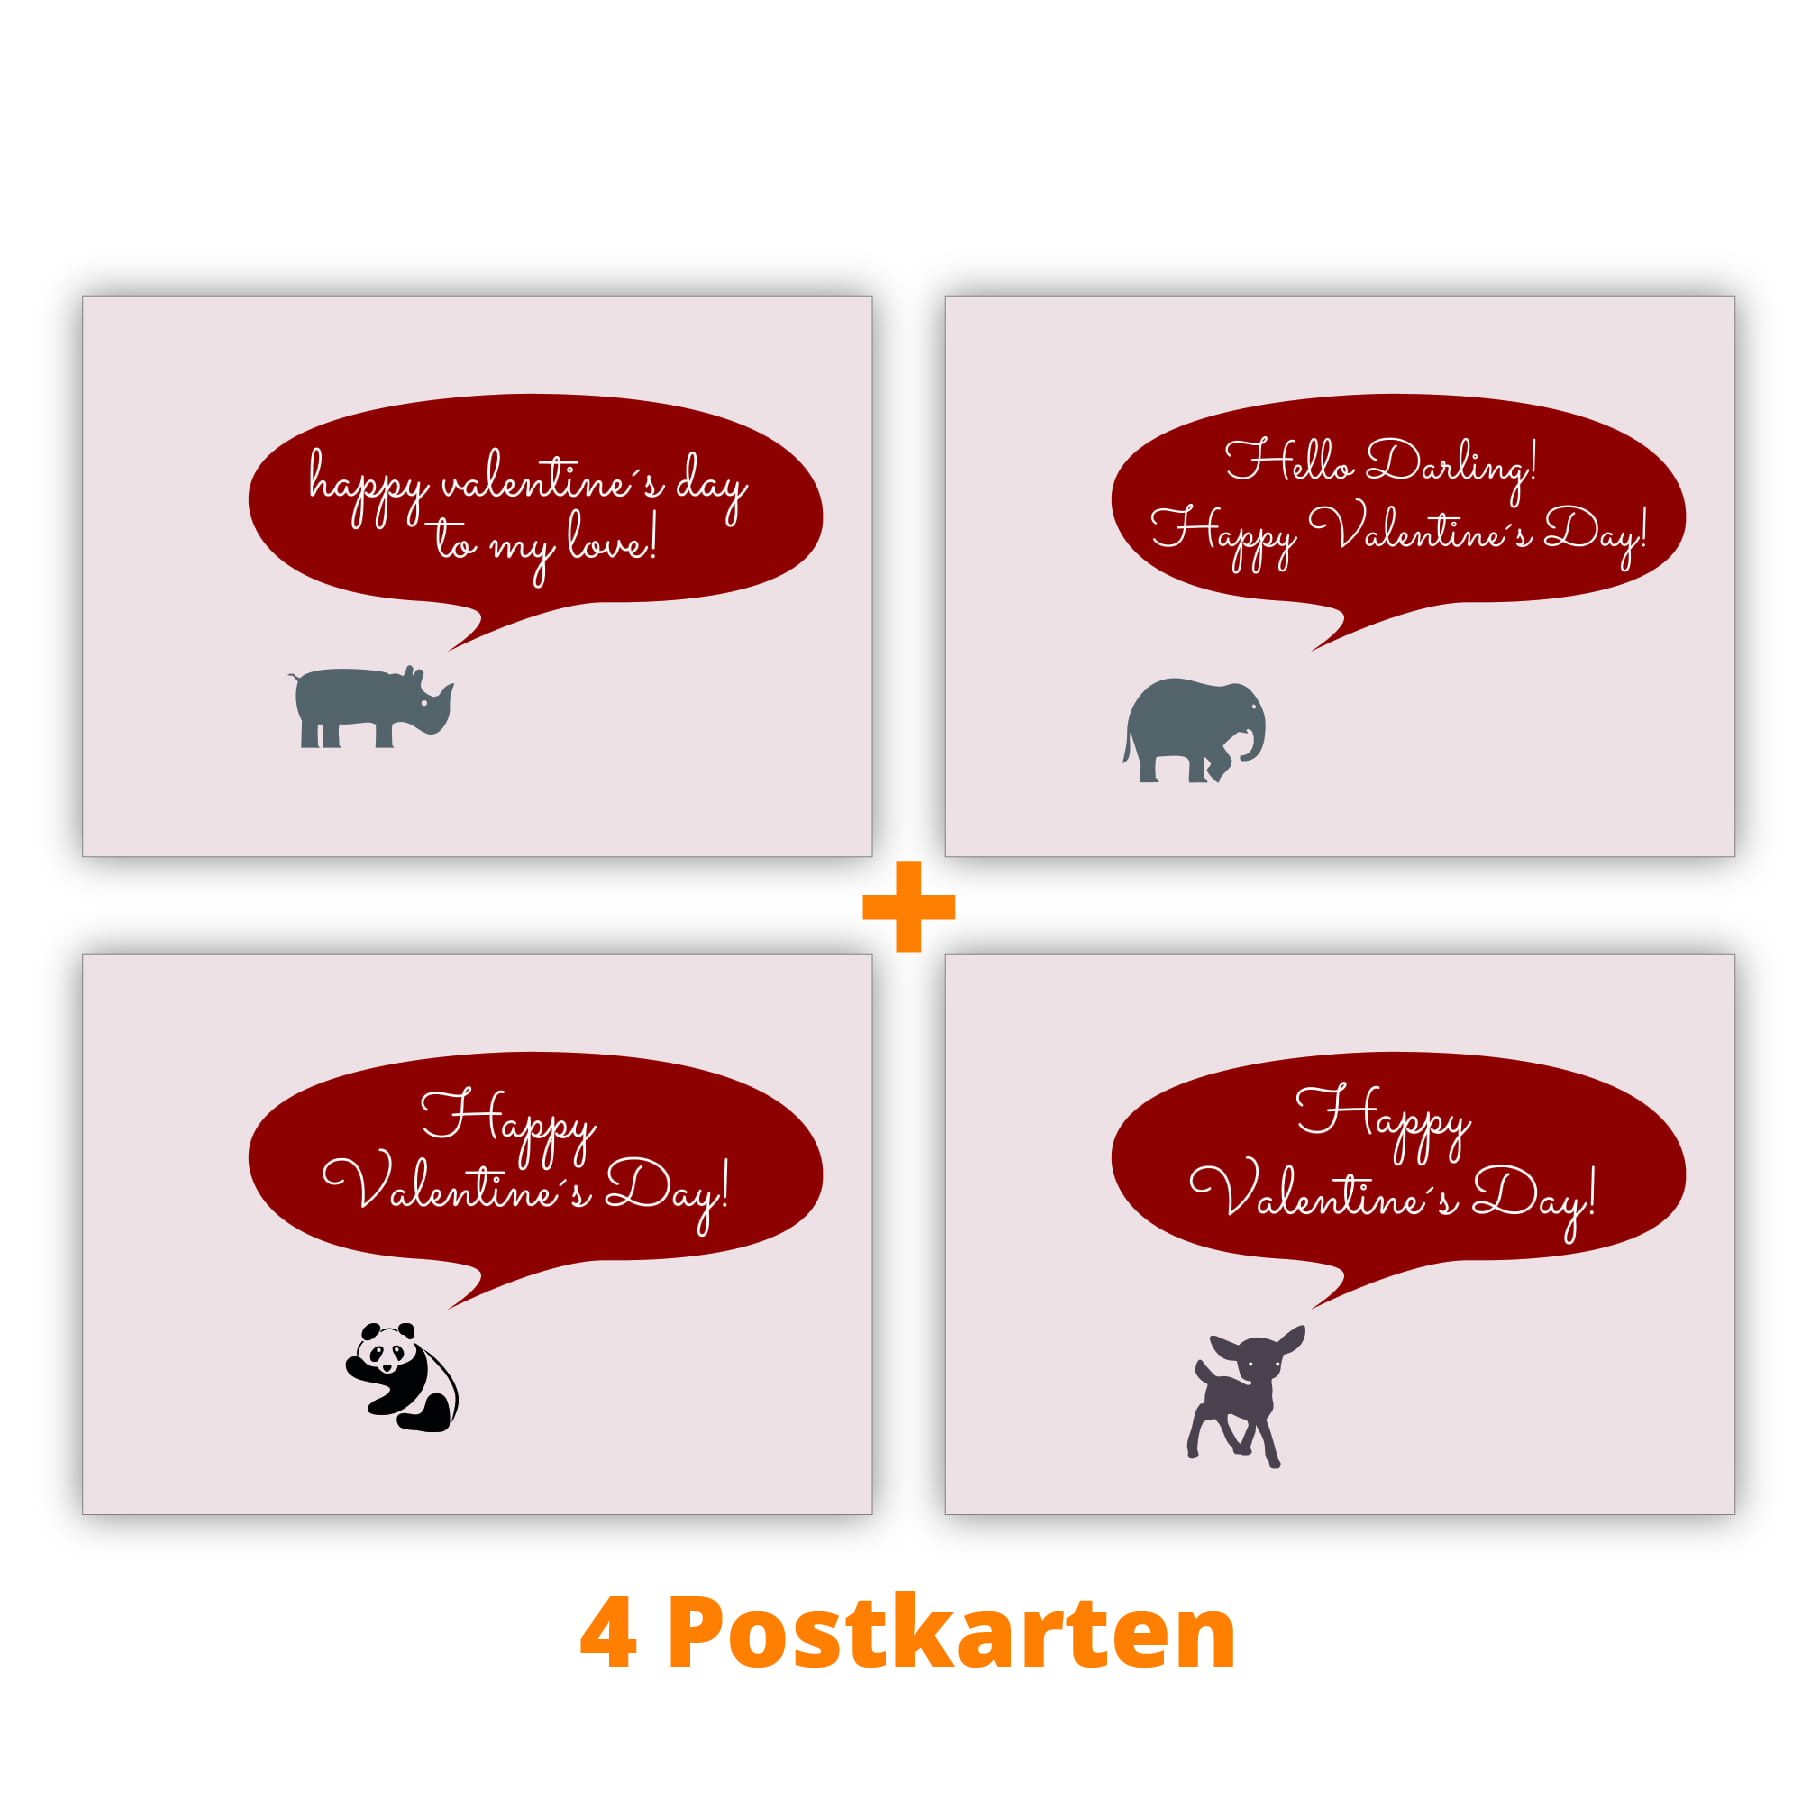 Kartenkaufrausch Postkarten in rosa: Valentinstag Postkarten mit Elefant